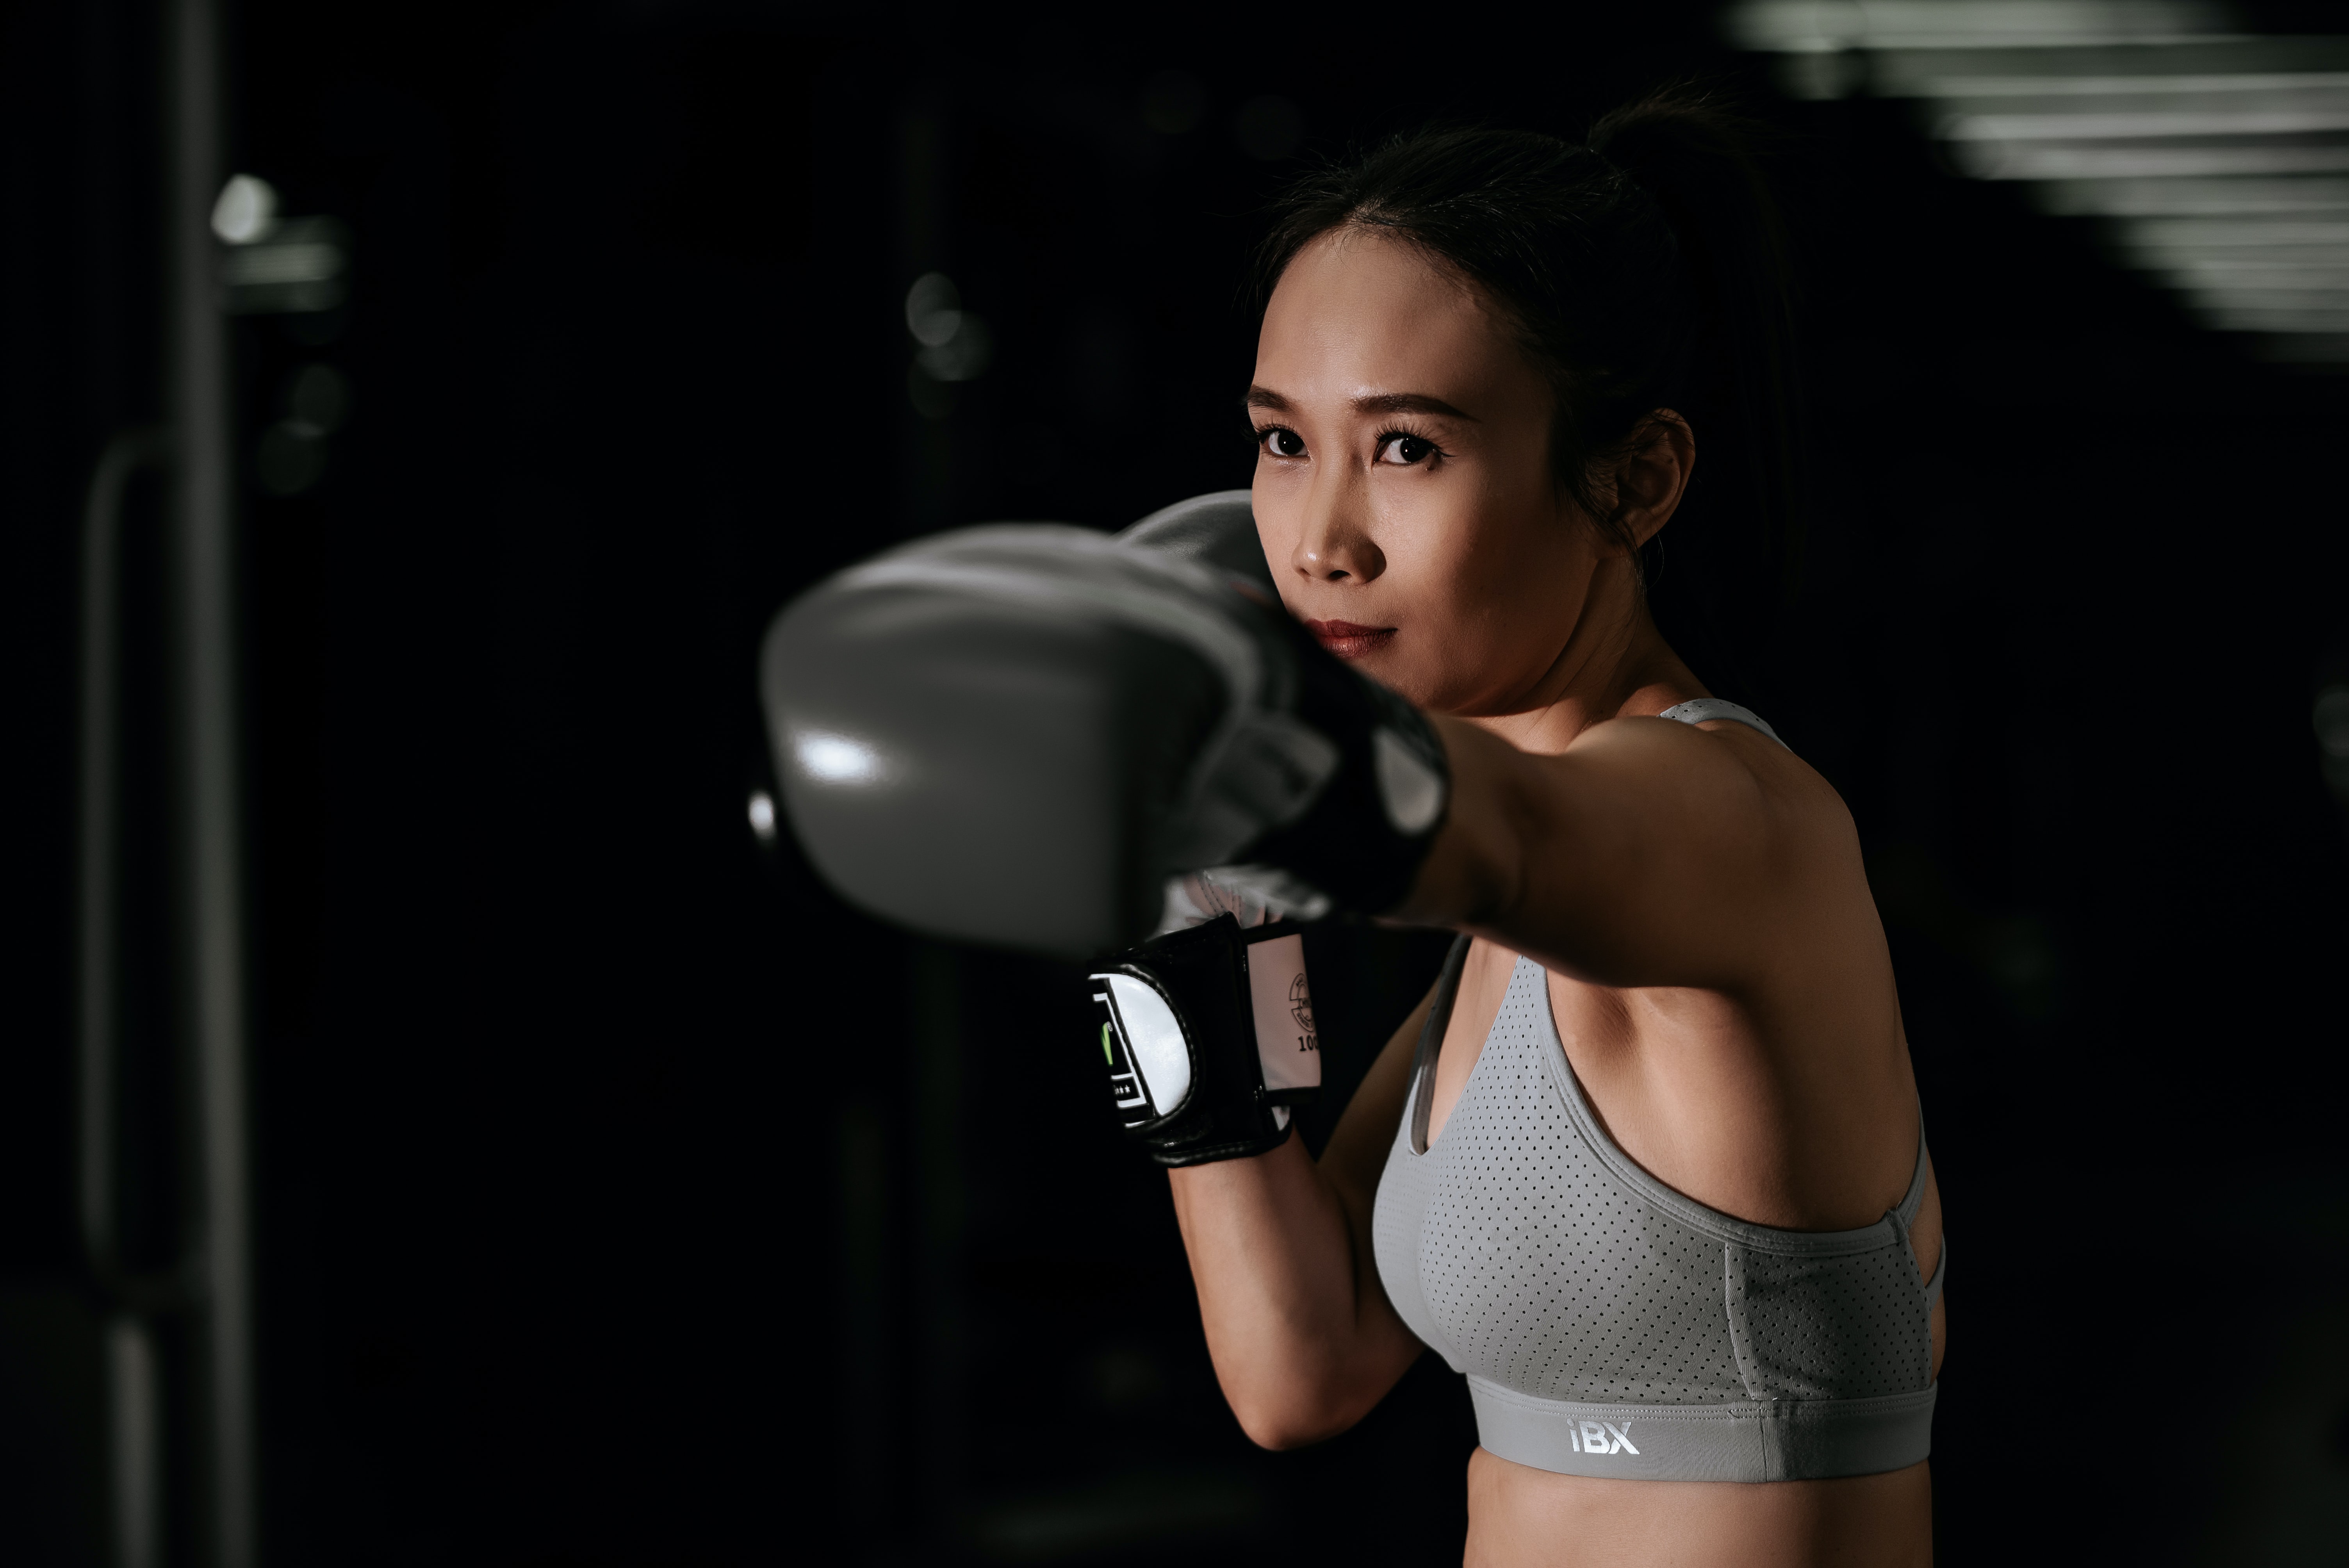 Kick boxing para mujeres: conoce sus beneficios